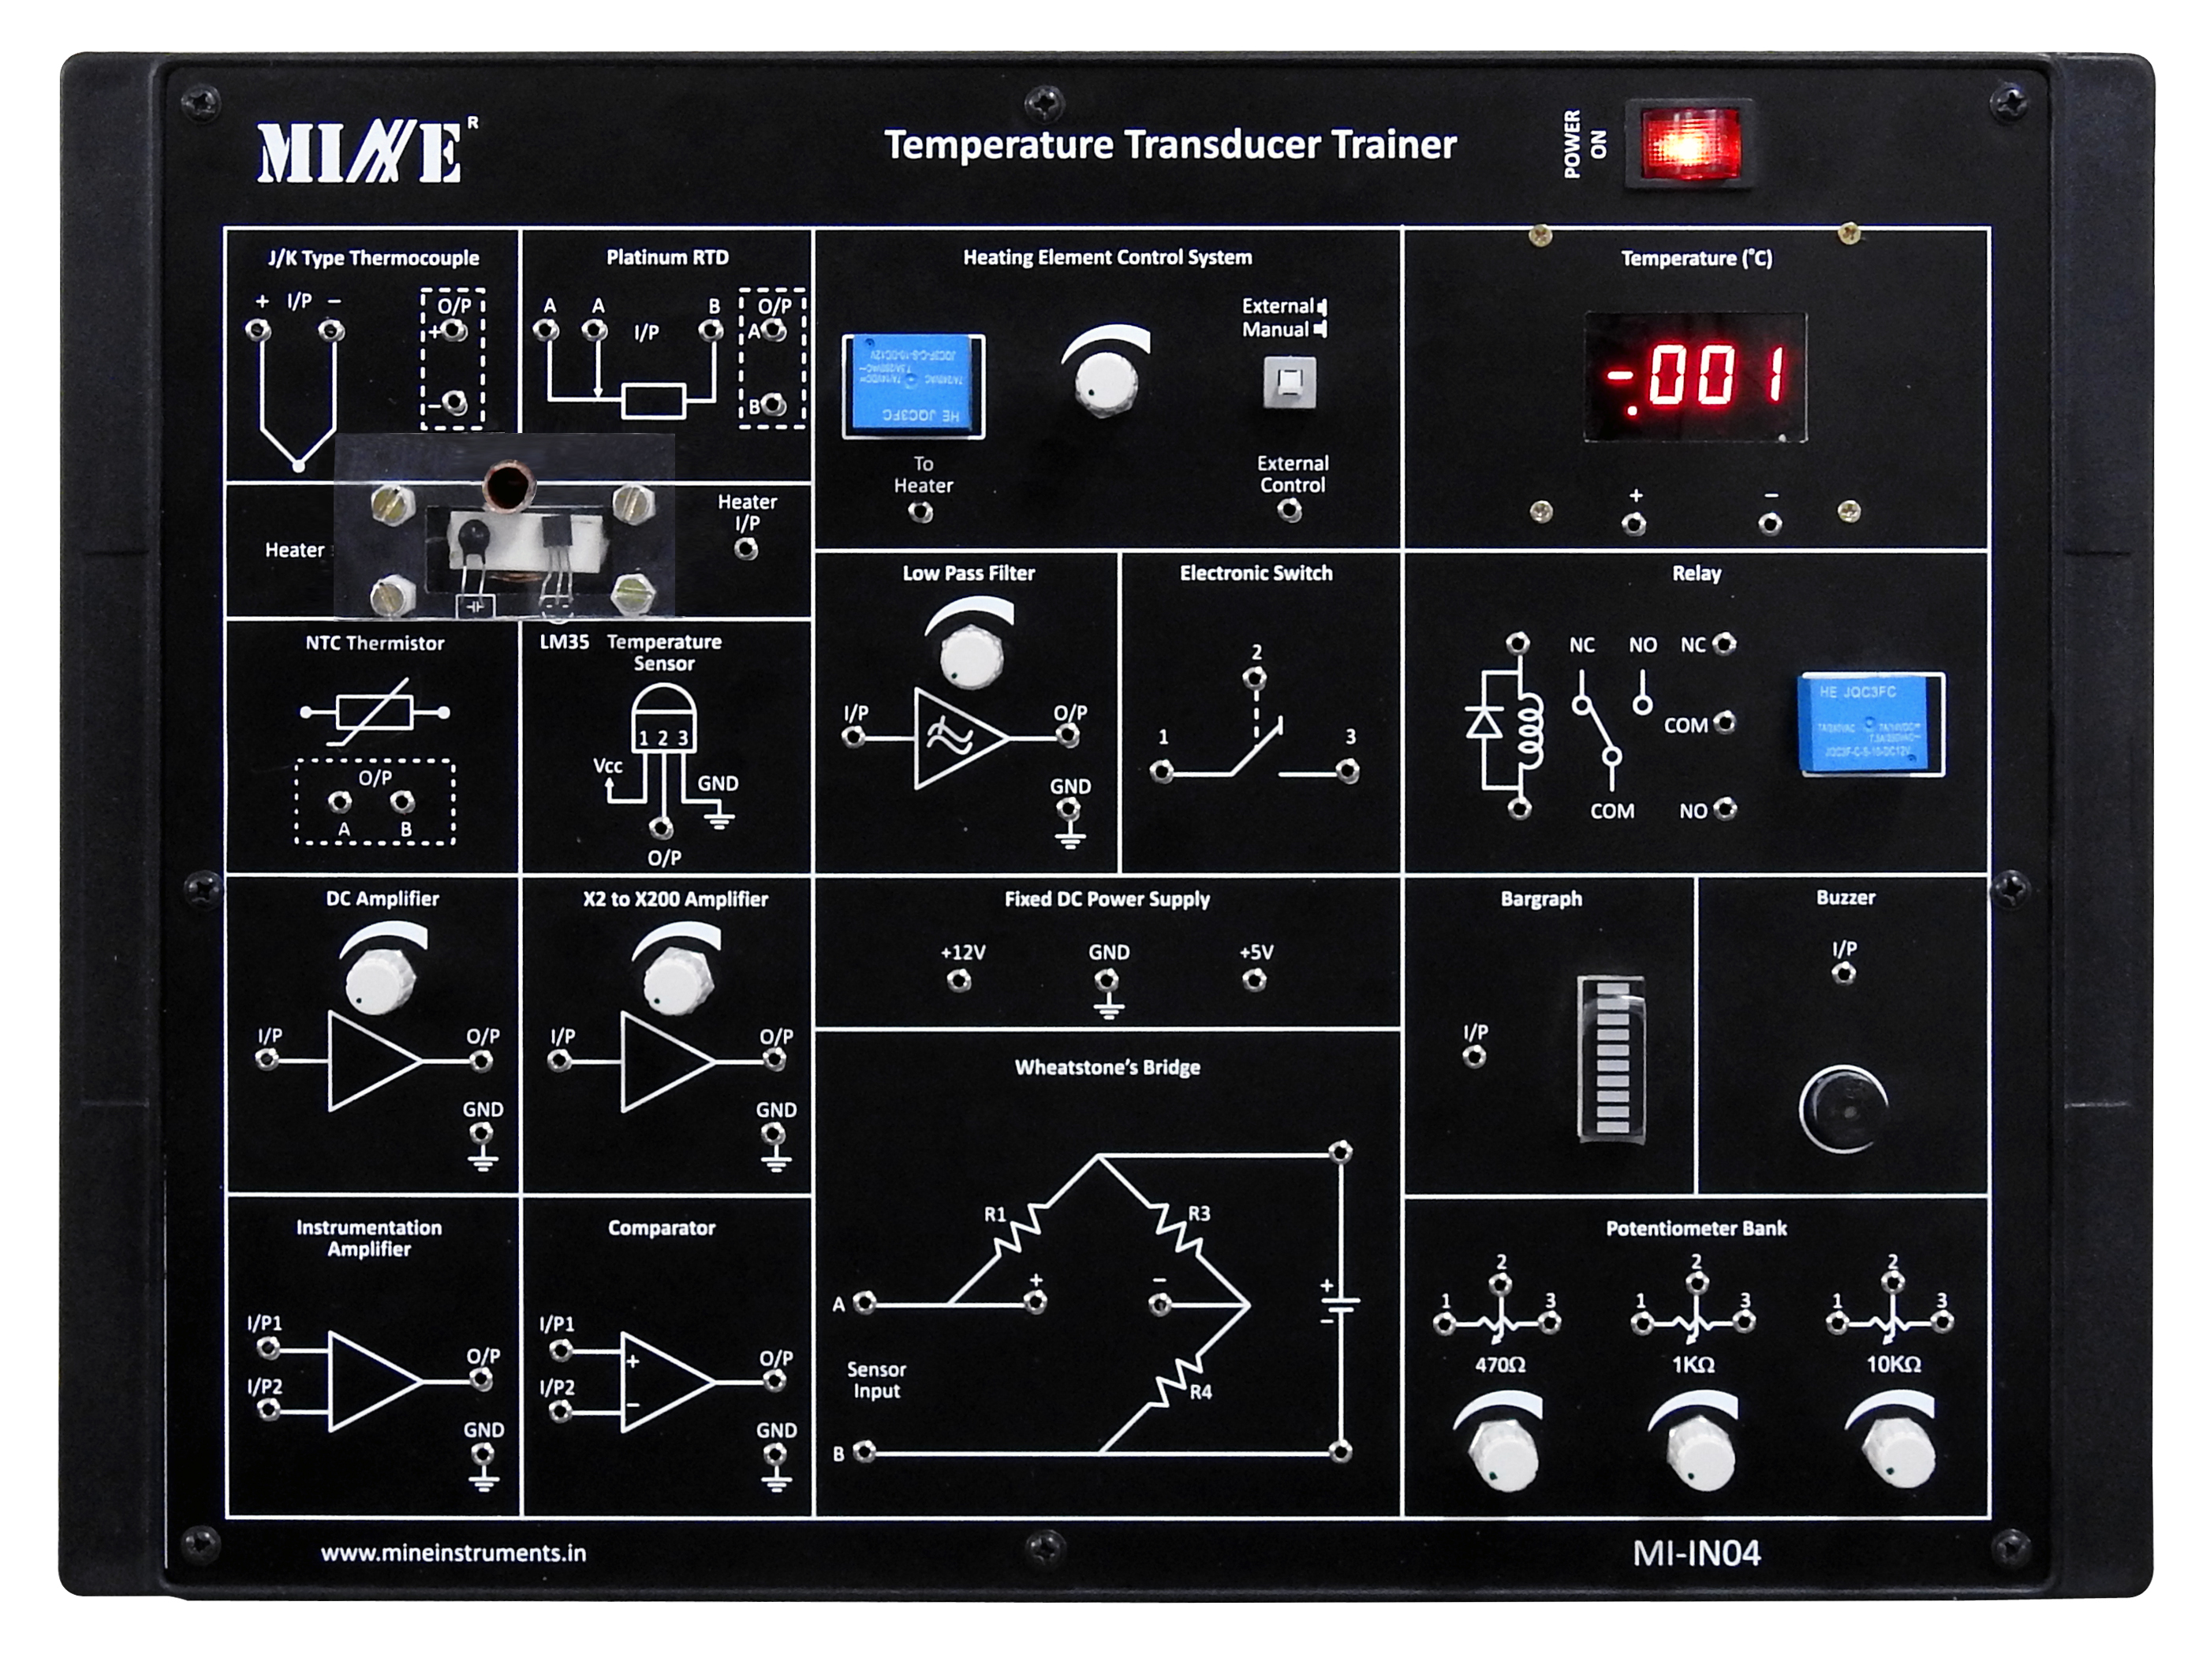 Temperature Transducer Trainer MI-IN04